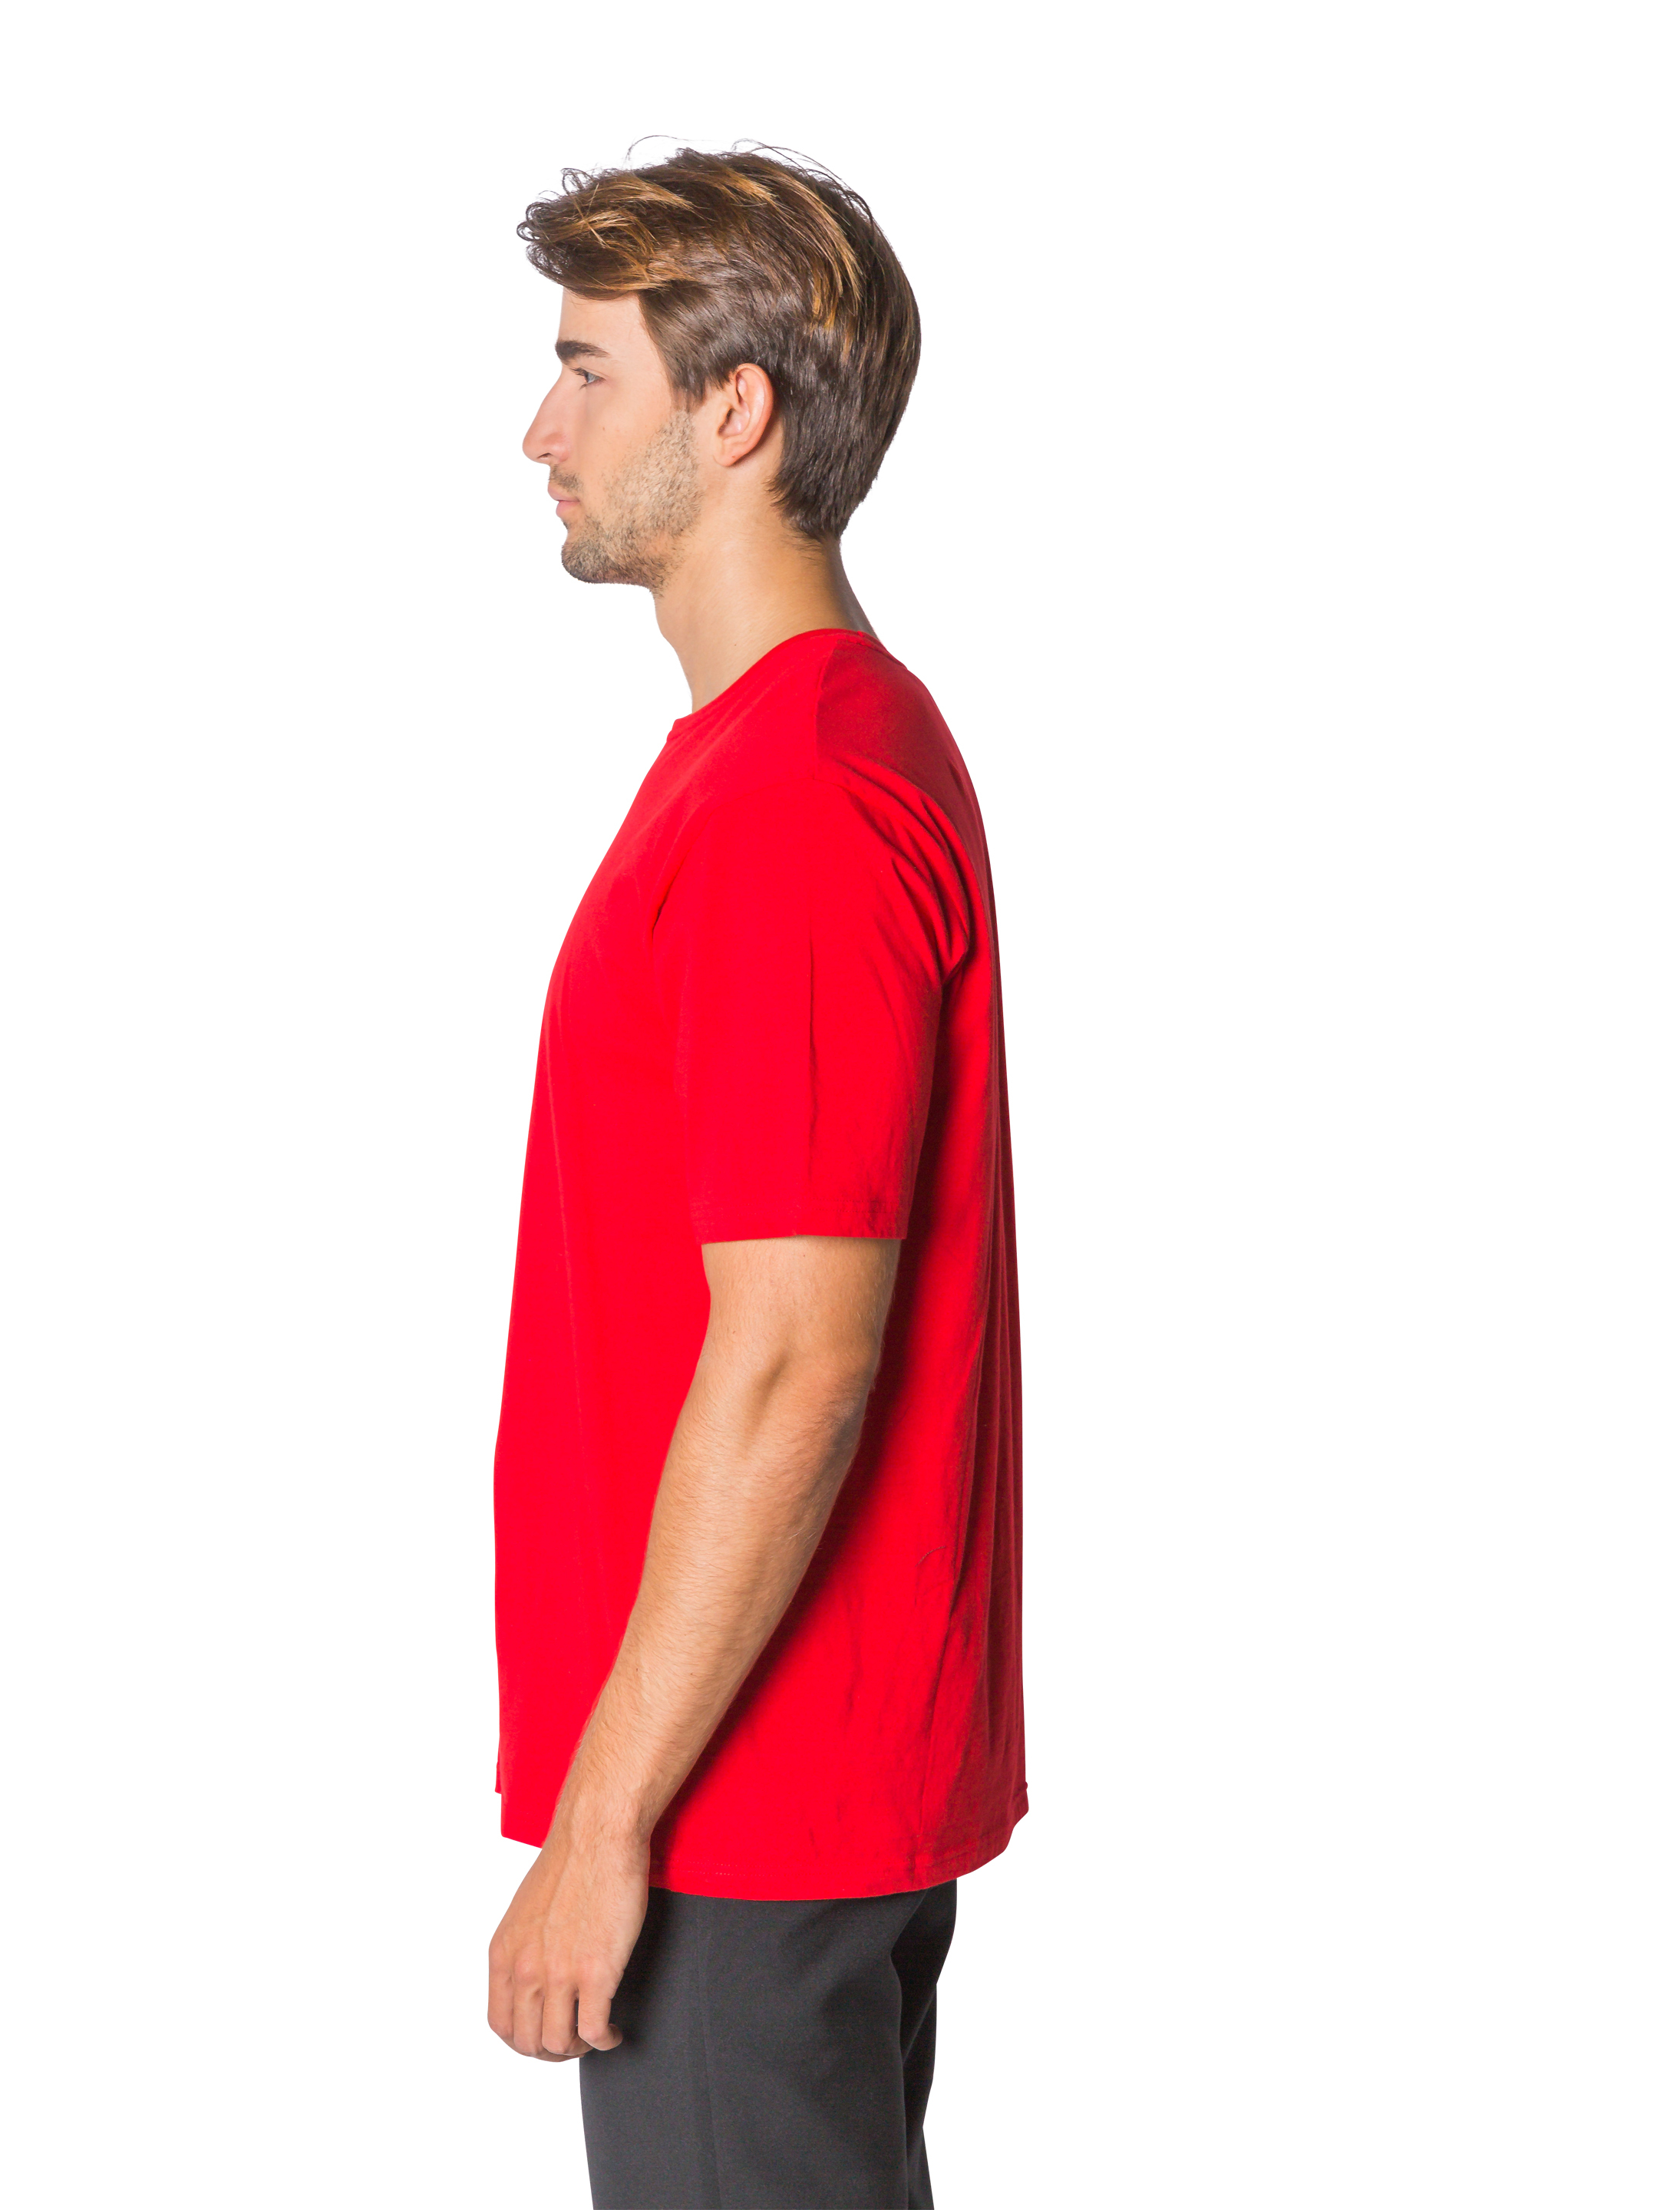 T-Shirt Herren rot S